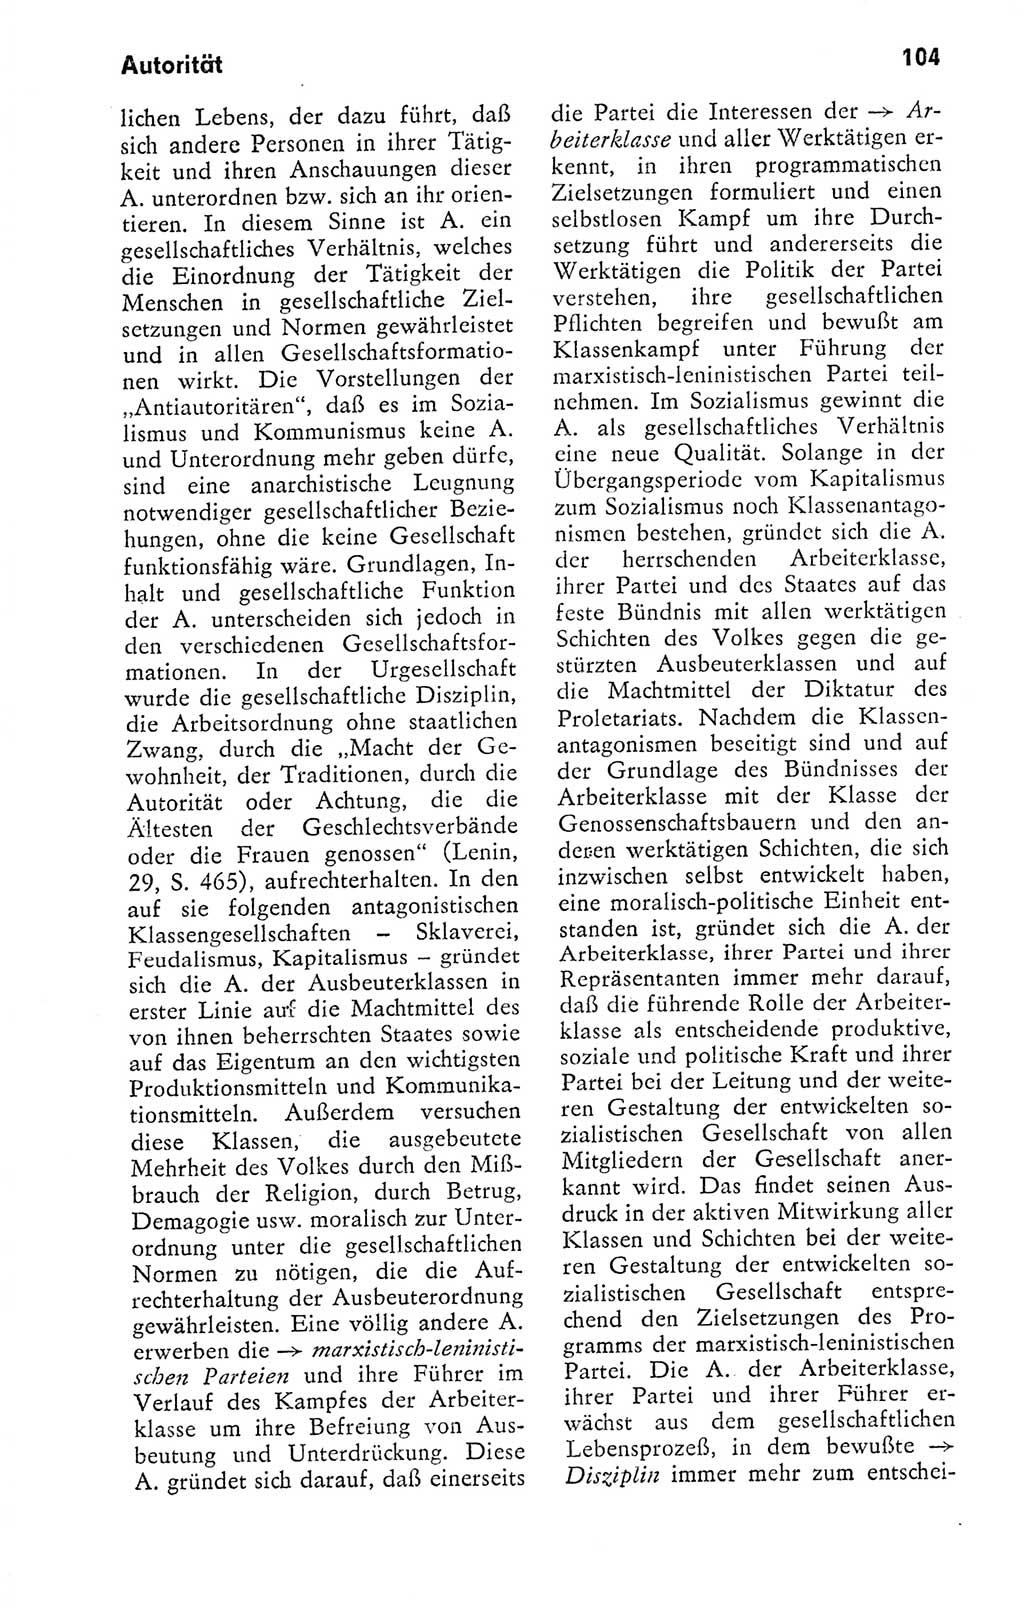 Kleines politisches Wörterbuch [Deutsche Demokratische Republik (DDR)] 1978, Seite 104 (Kl. pol. Wb. DDR 1978, S. 104)